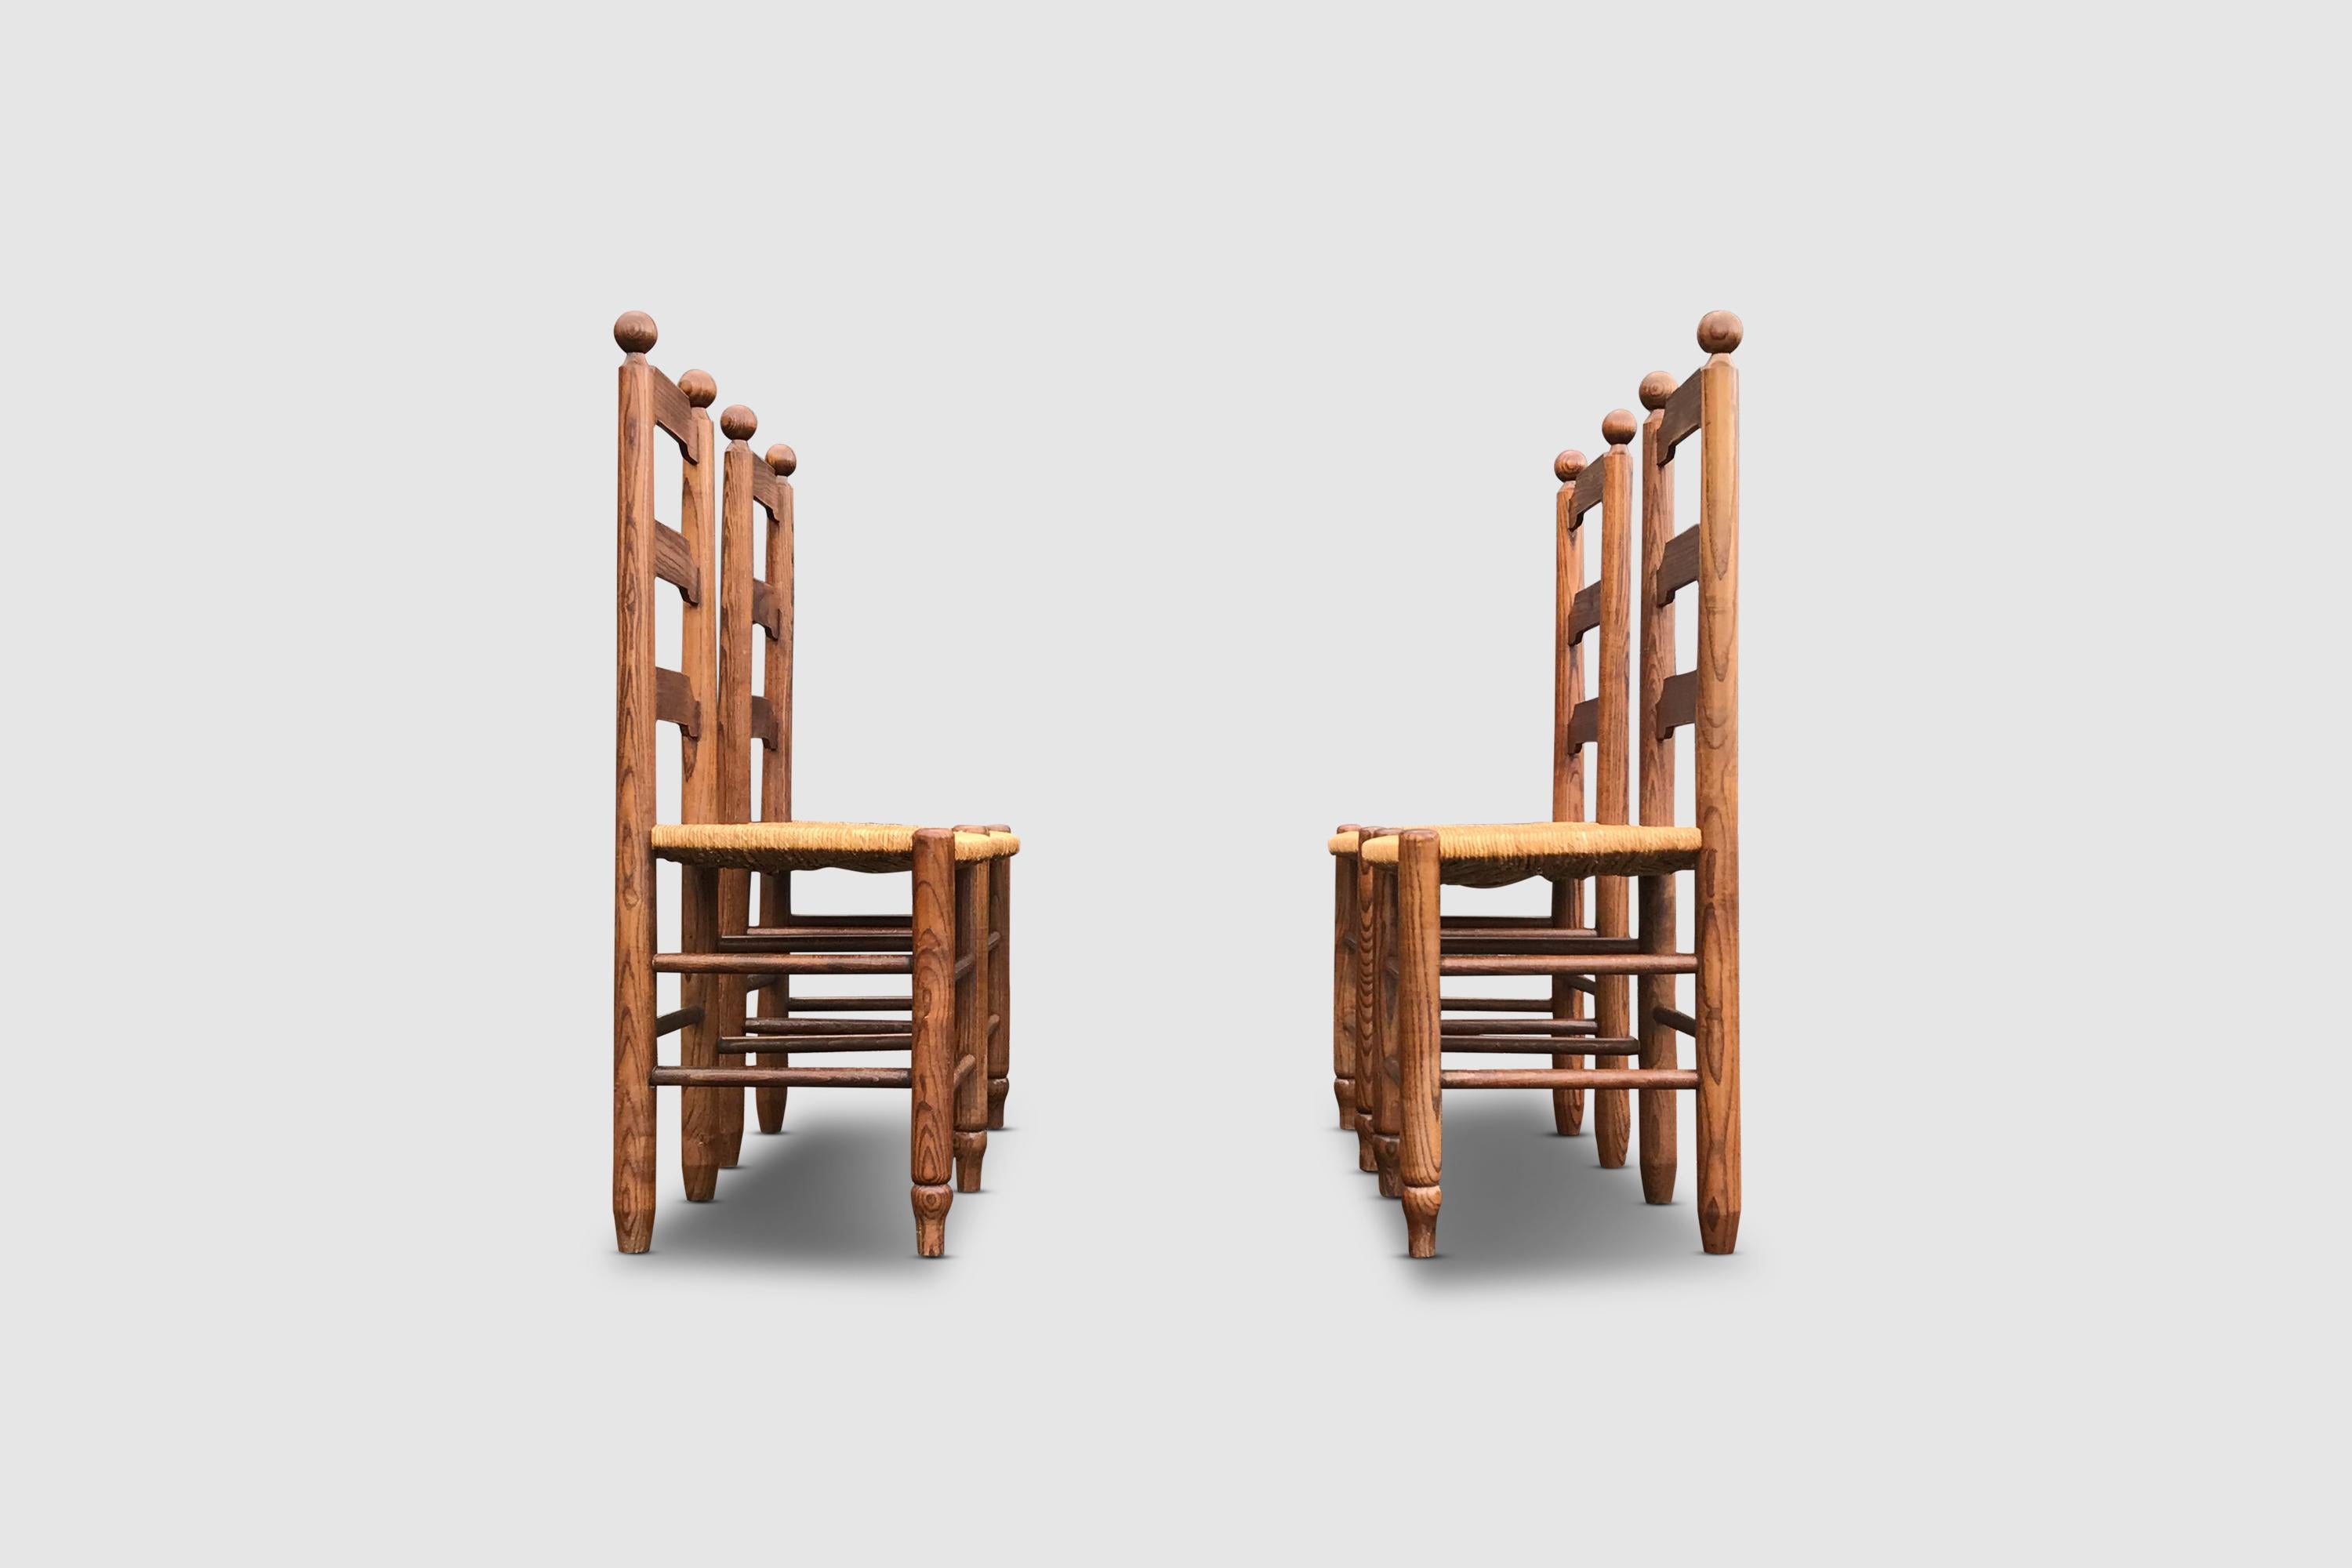 Ensemble de chaises rustiques en chêne et en osier de l'artisan français Georges Robert.

Les chaises sont surmontées d'un nœud sculpté typique. Le dossier est à triple lattes et sculpté de manière traditionnelle. La chaise est dotée d'épaisses